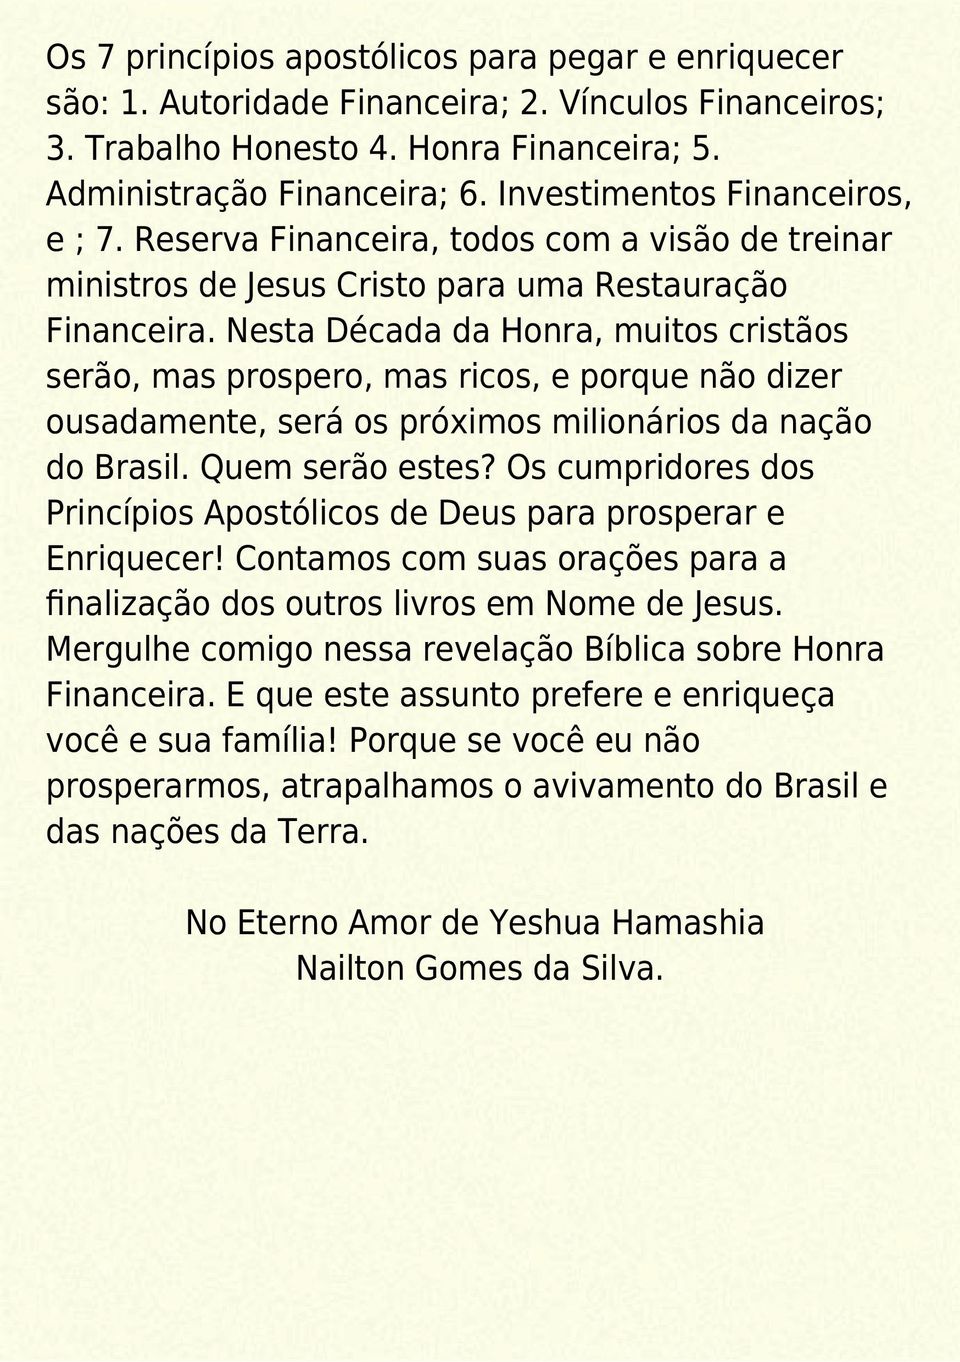 Nesta Década da Honra, muitos cristãos serão, mas prospero, mas ricos, e porque não dizer ousadamente, será os próximos milionários da nação do Brasil. Quem serão estes?